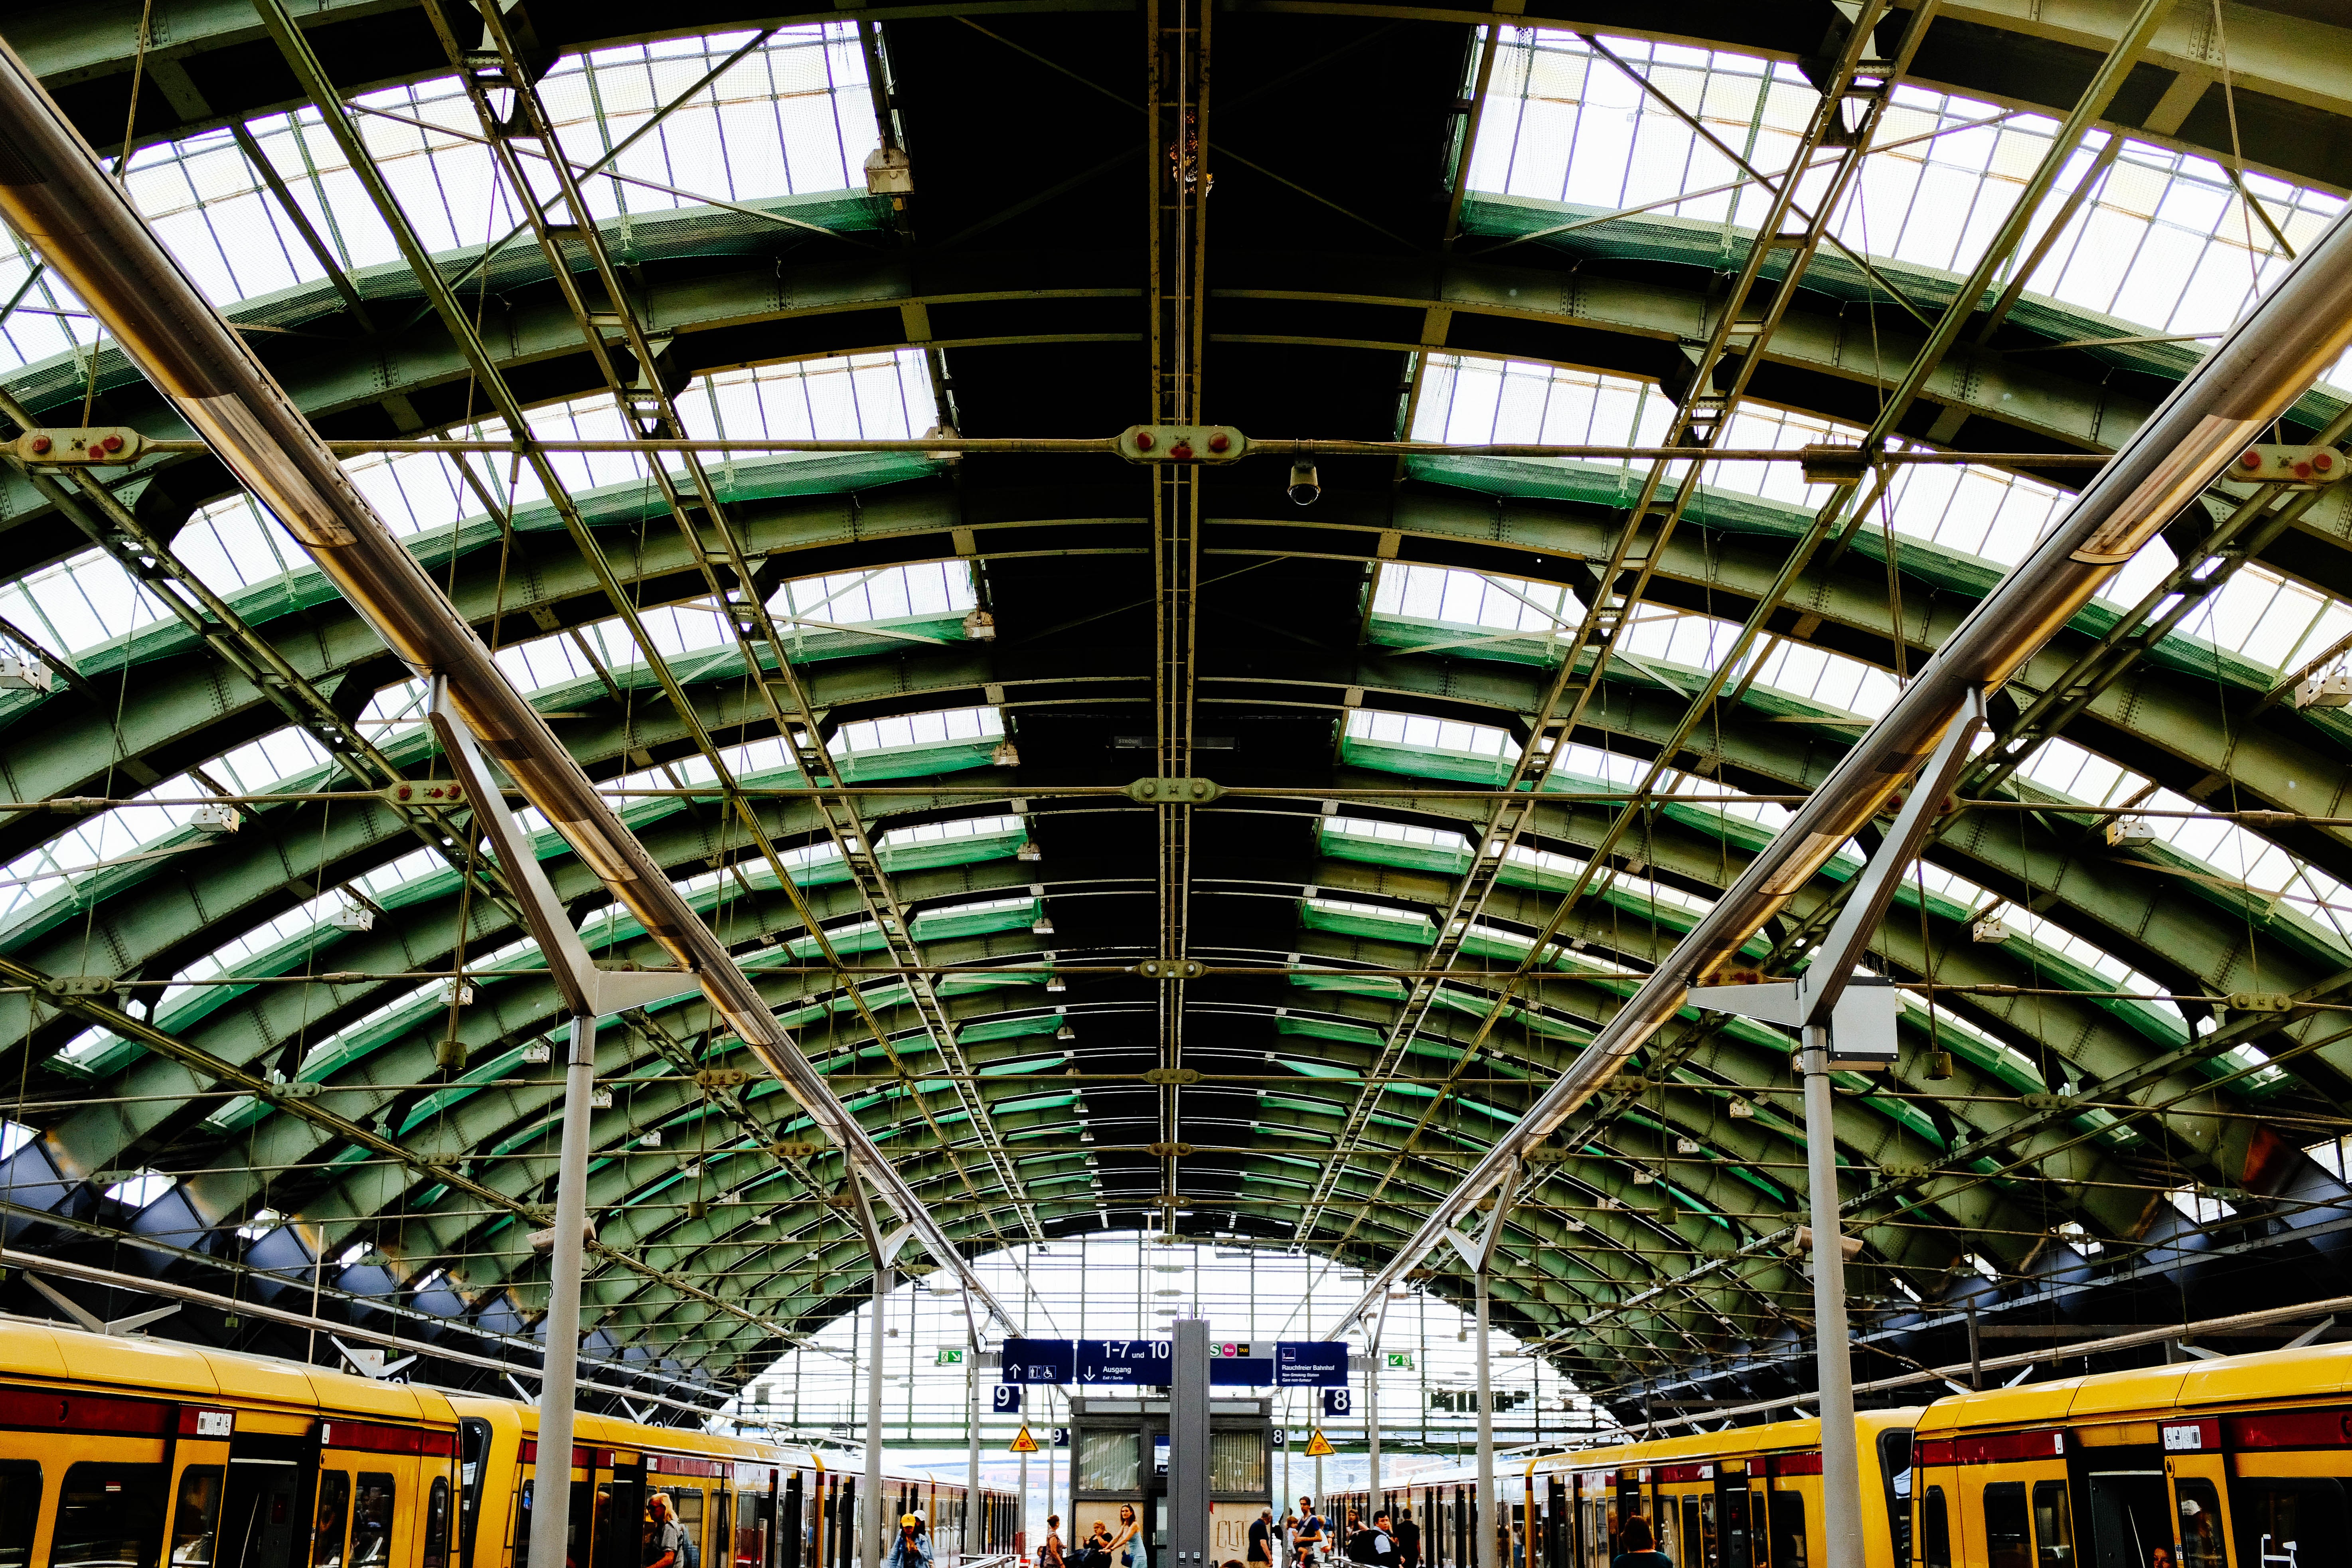 Soffitto della stazione ferroviaria foto 